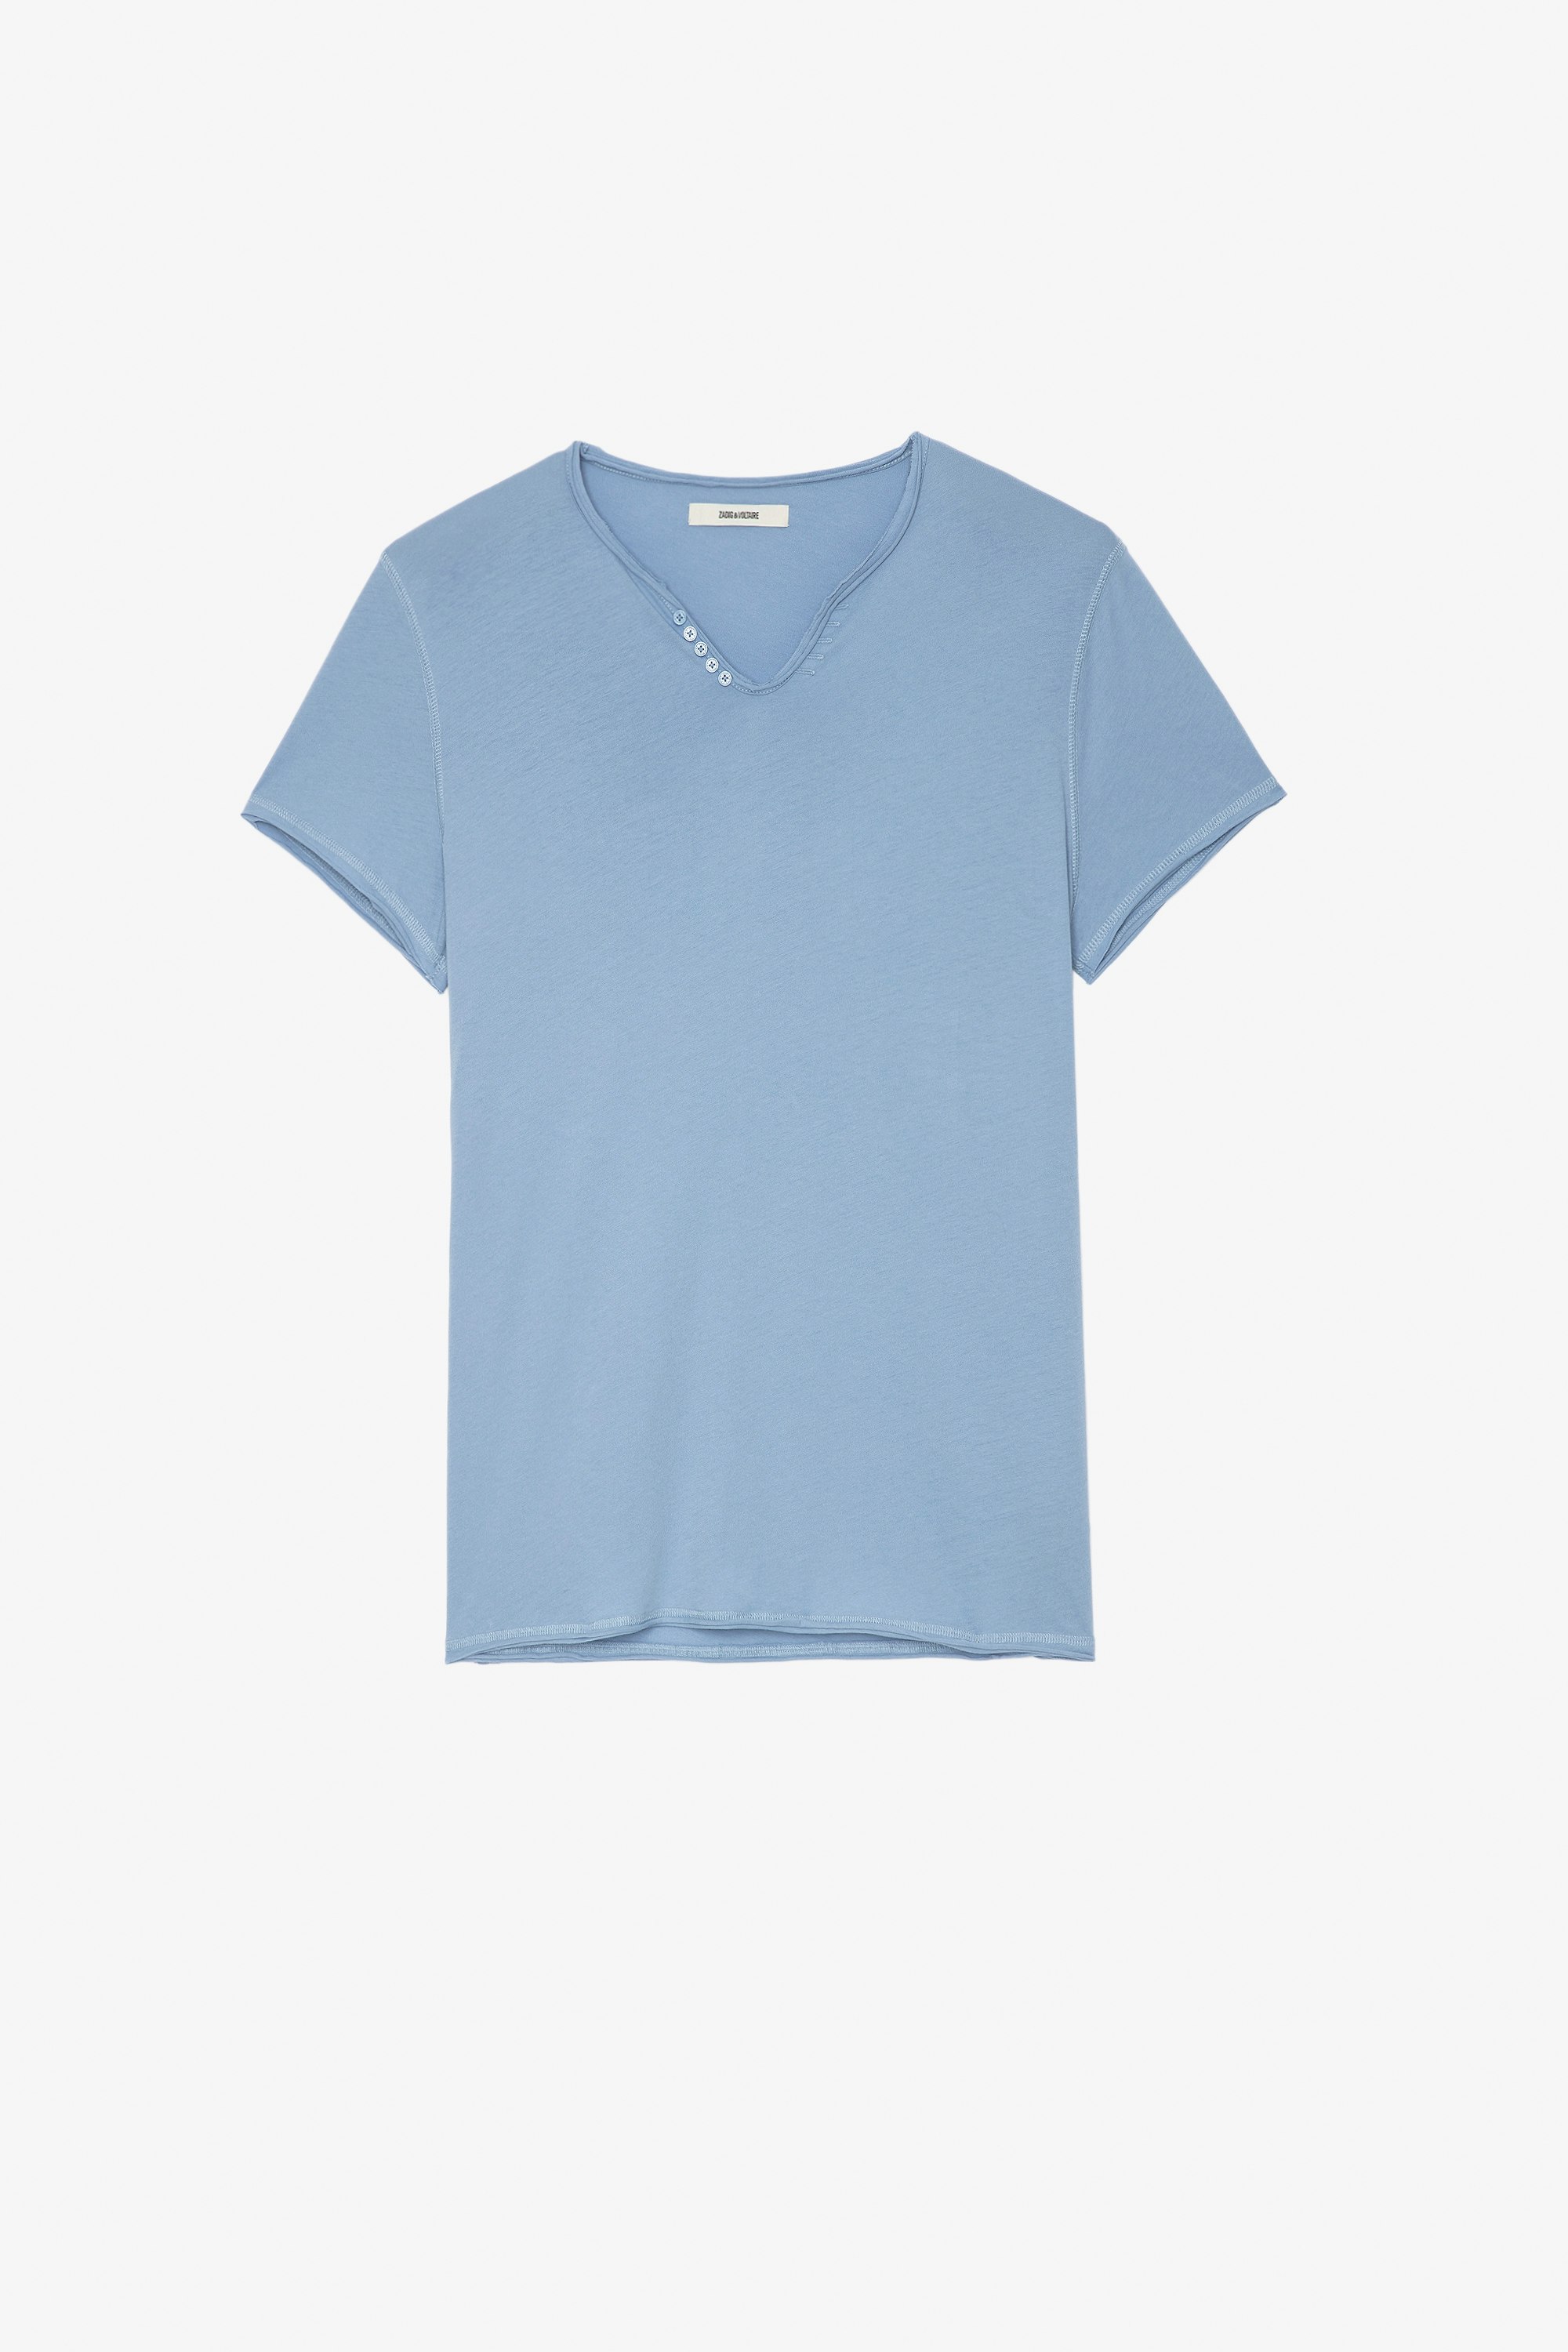 Camiseta Monastir Camiseta azul de algodón de cuello panadero para hombre